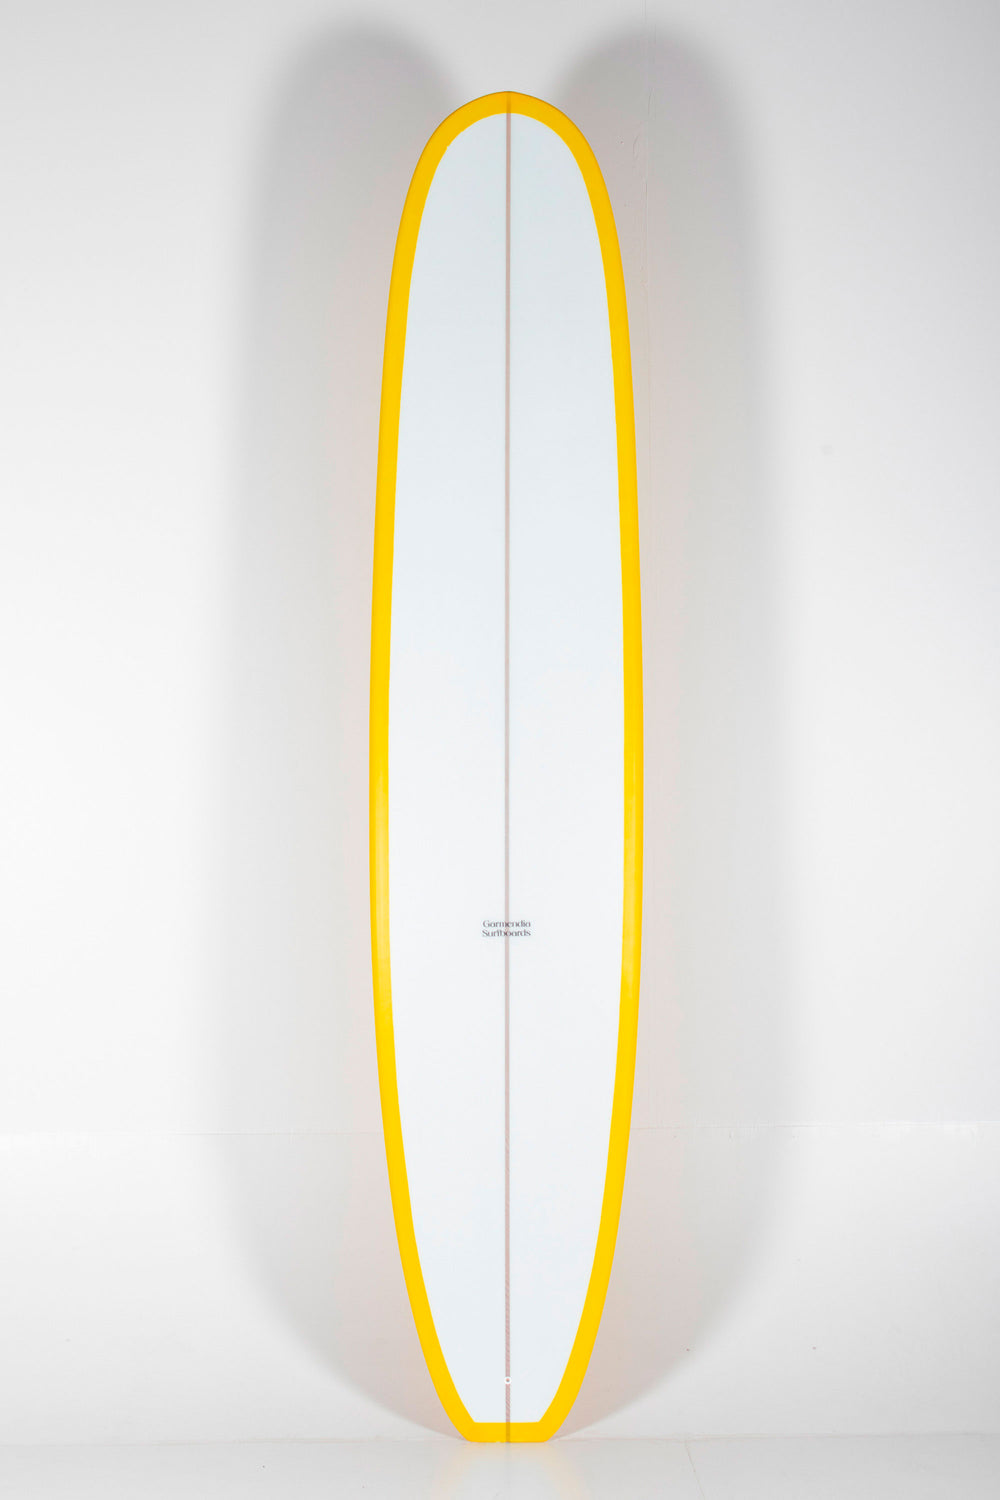 Garmendia Surfboards - NOSERIDER - 9'4